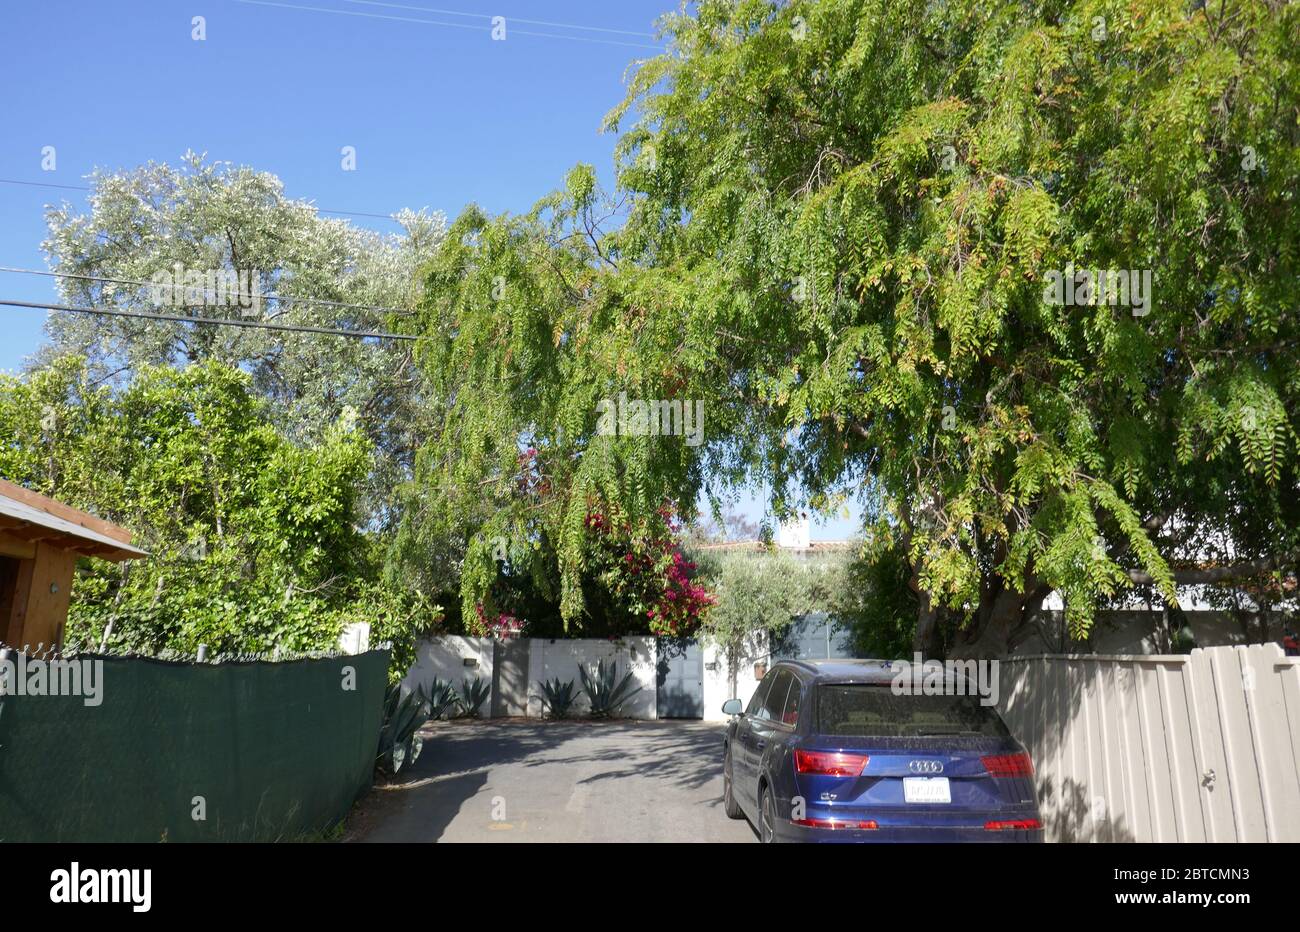 Los Angeles, Kalifornien, USA 24. Mai 2020 EIN allgemeiner Blick auf die Atmosphäre von Ewan McGregors Haus am 24. Mai 2020 in Los Angeles, Kalifornien, USA. Foto von Barry King/Alamy Stock Photo Stockfoto